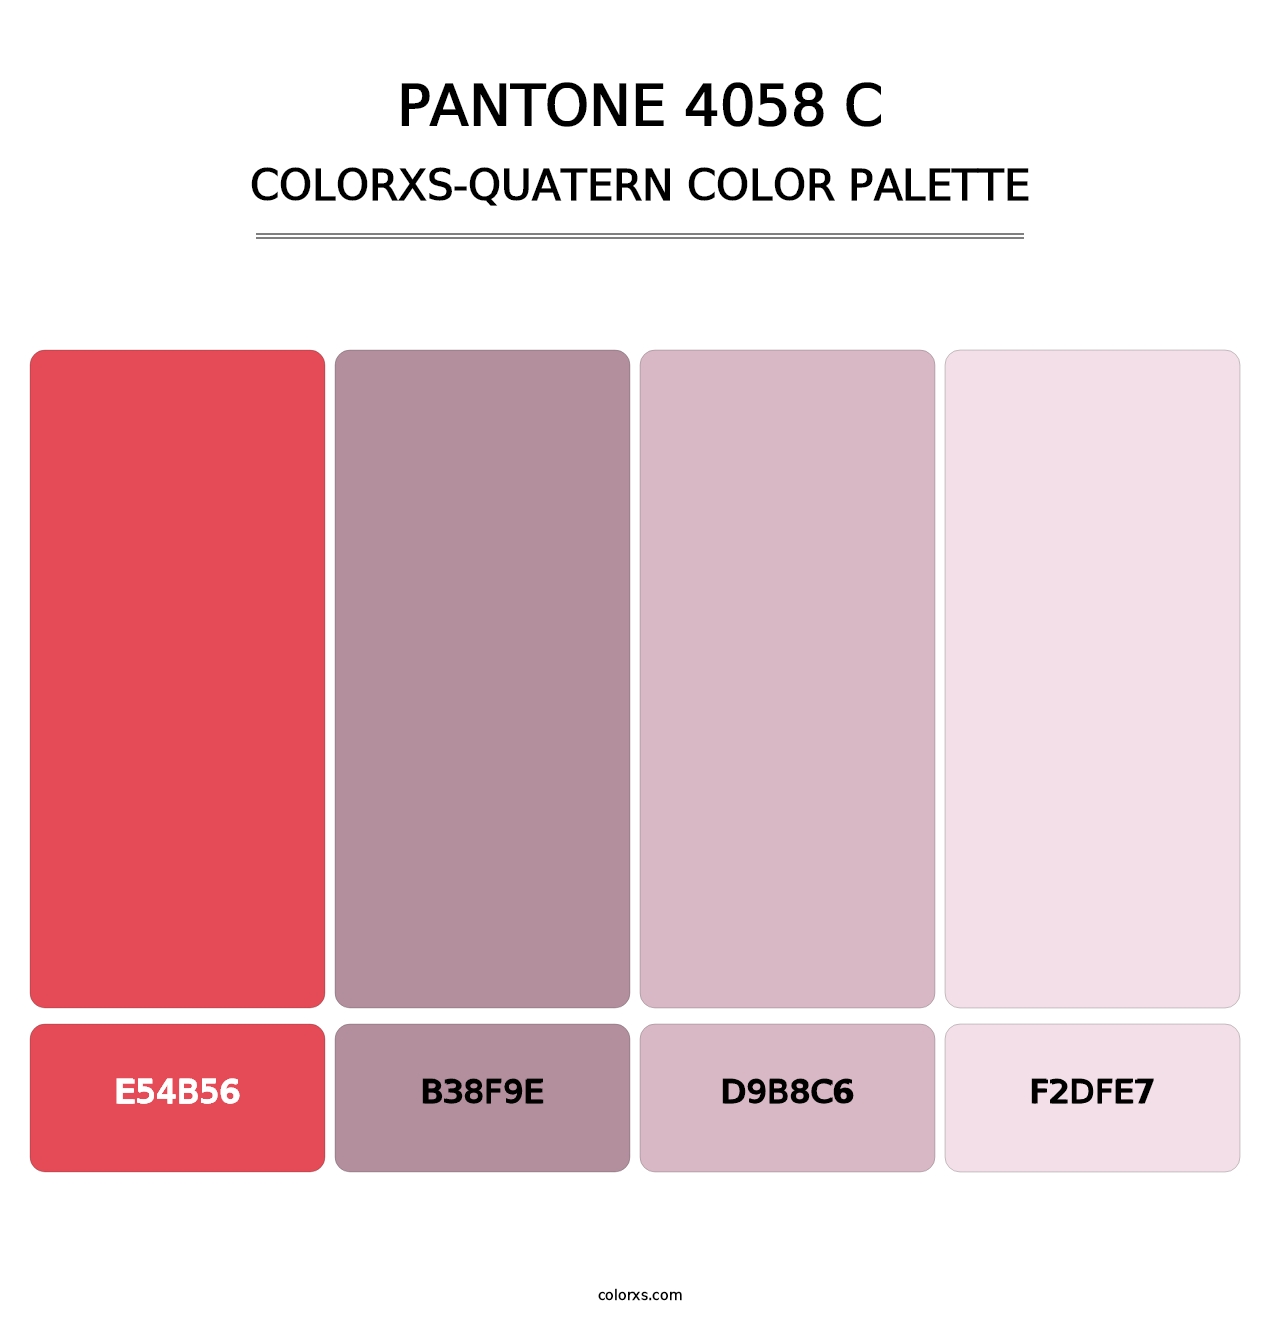 PANTONE 4058 C - Colorxs Quatern Palette